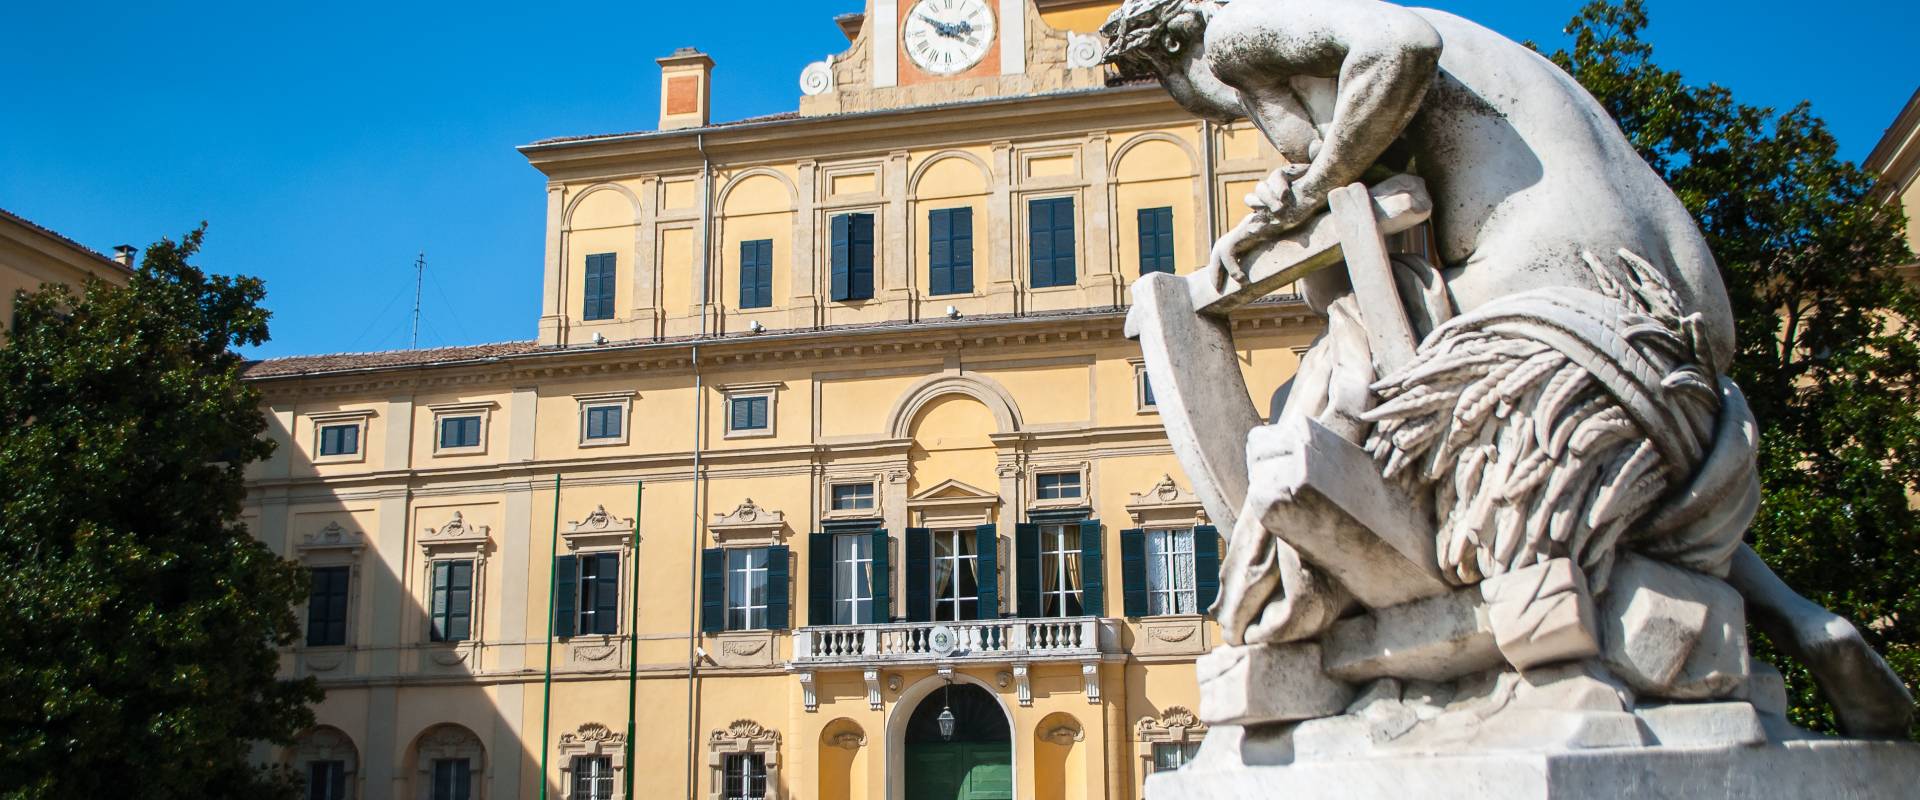 Palazzo Ducale di Parma da un'altra prospettiva photo by Nadietta90